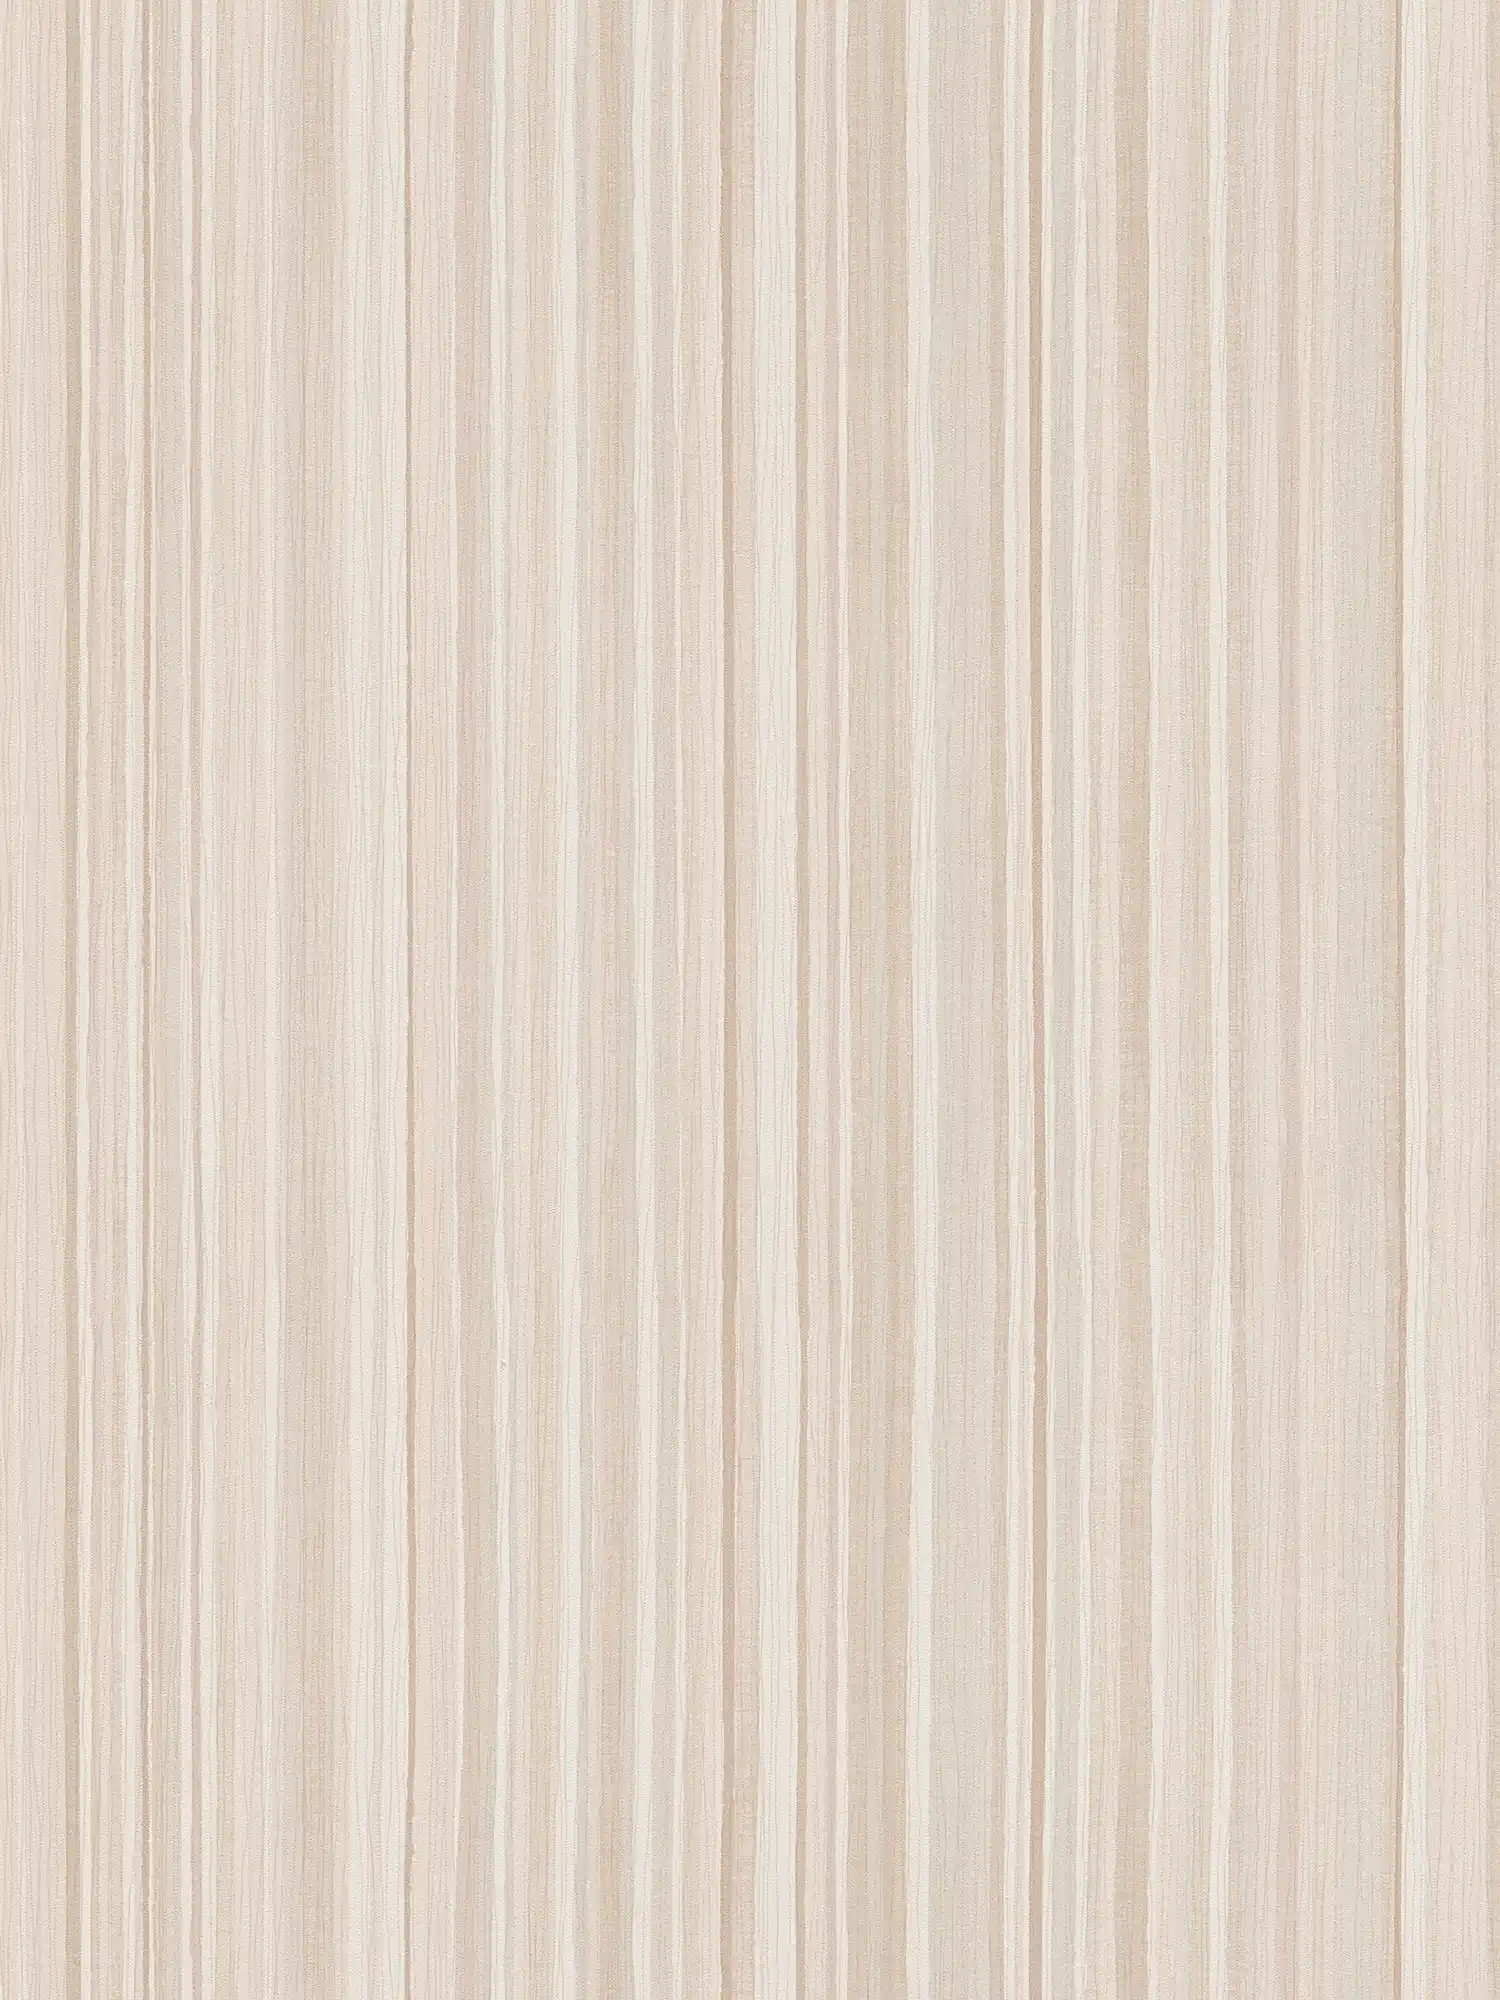 Papier peint à rayures avec motif de lignes étroites - beige
